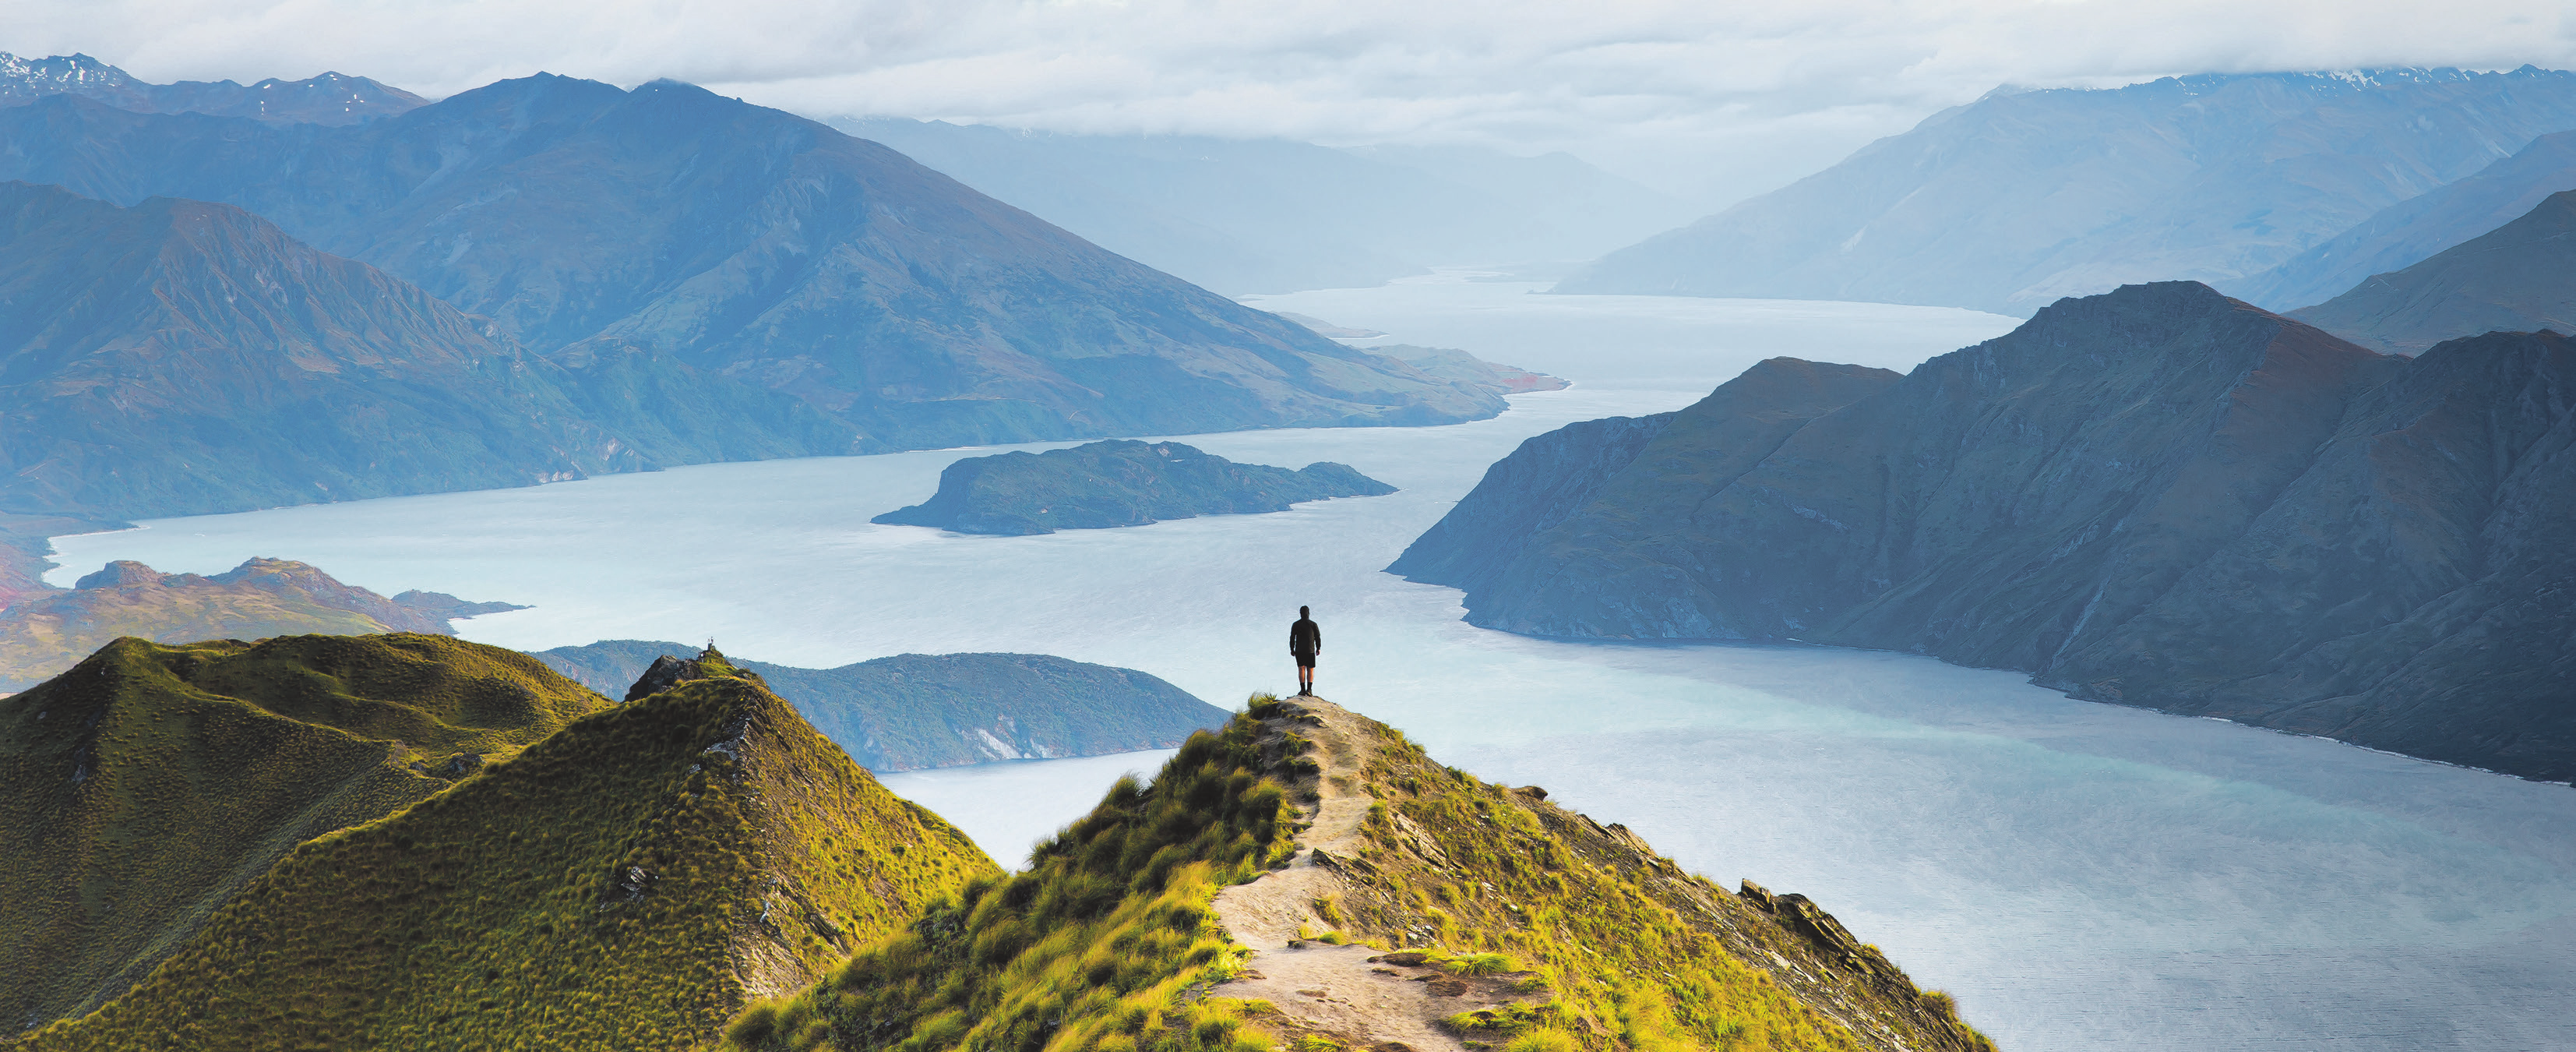 Spektakuläre Aussichten bieten sich den Wandernden beim Trecking in Neuseeland. Unlängst wurde eine neue Route rund um die Südinsel eröffnet Foto: Joshua/stock.adobe.com